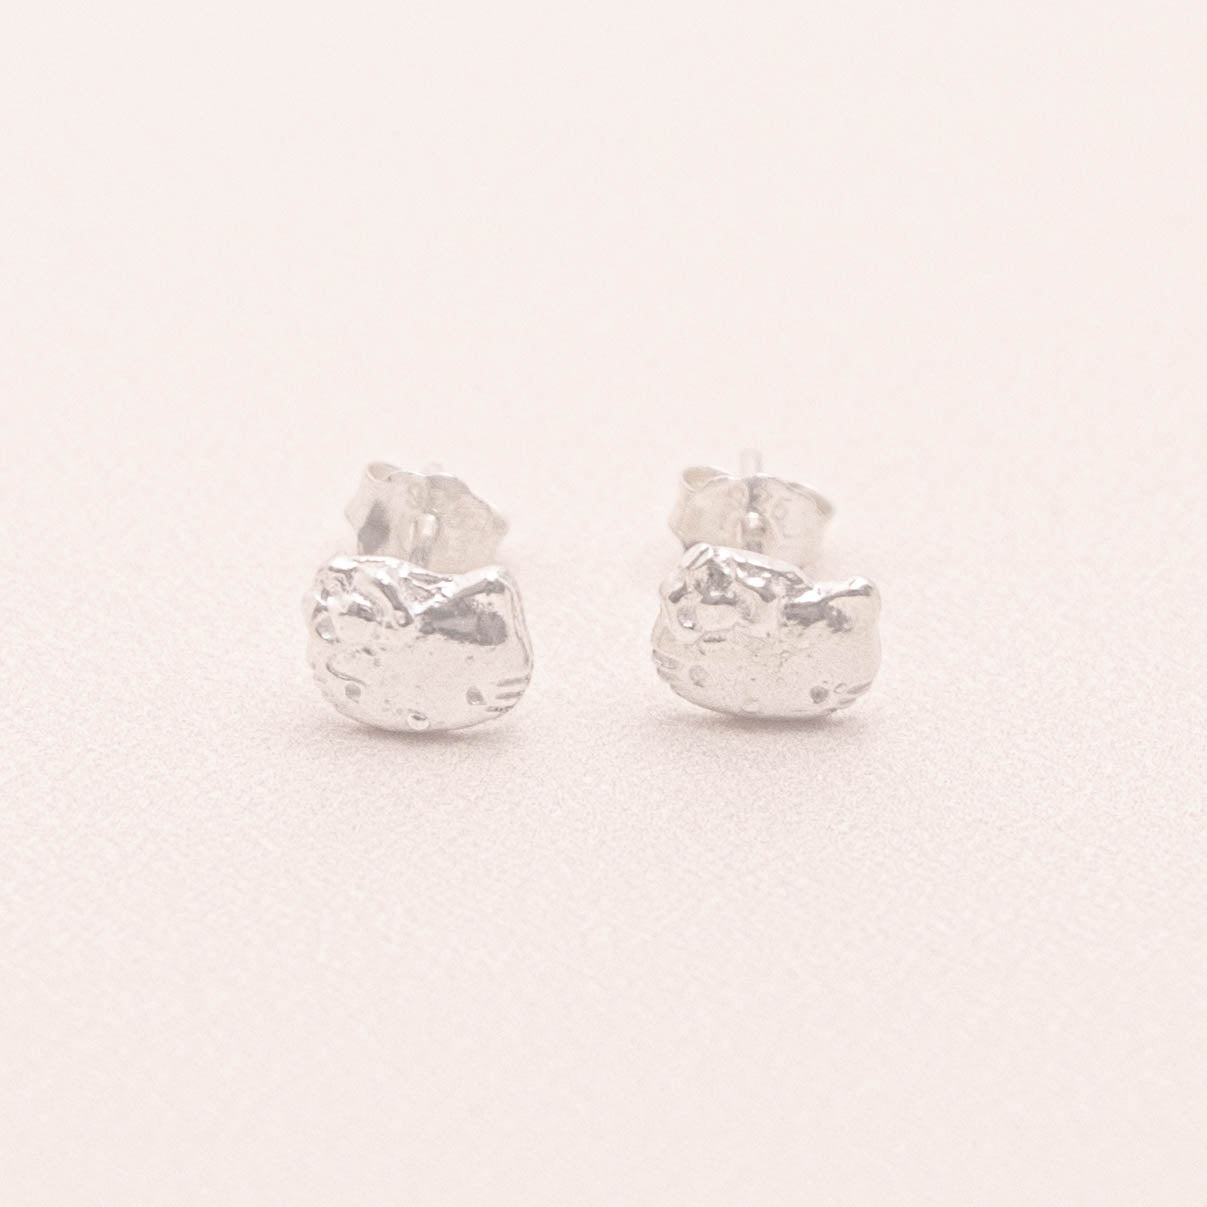 Hello Kitty Stud Earrings